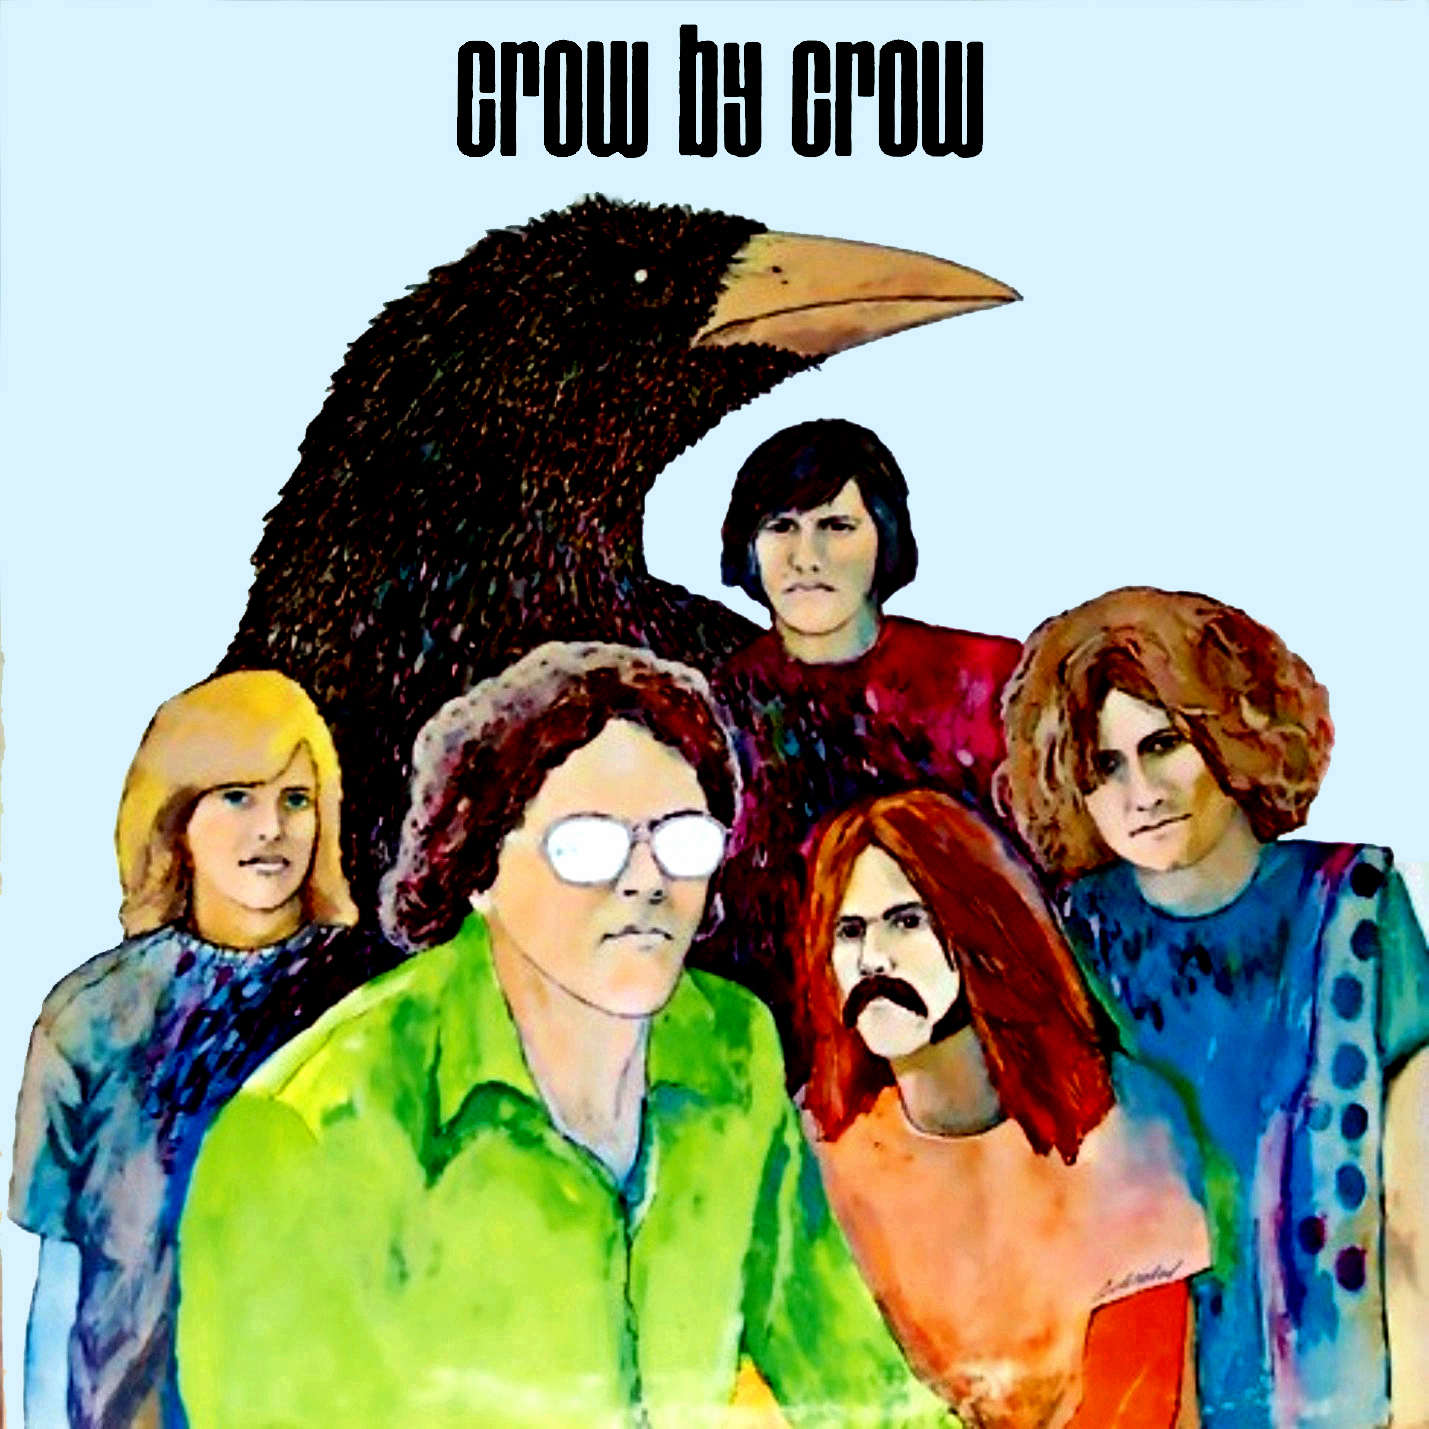 ¿Qué estáis escuchando ahora? - Página 10 Crow+-+crow+by+crow+1970+front+large